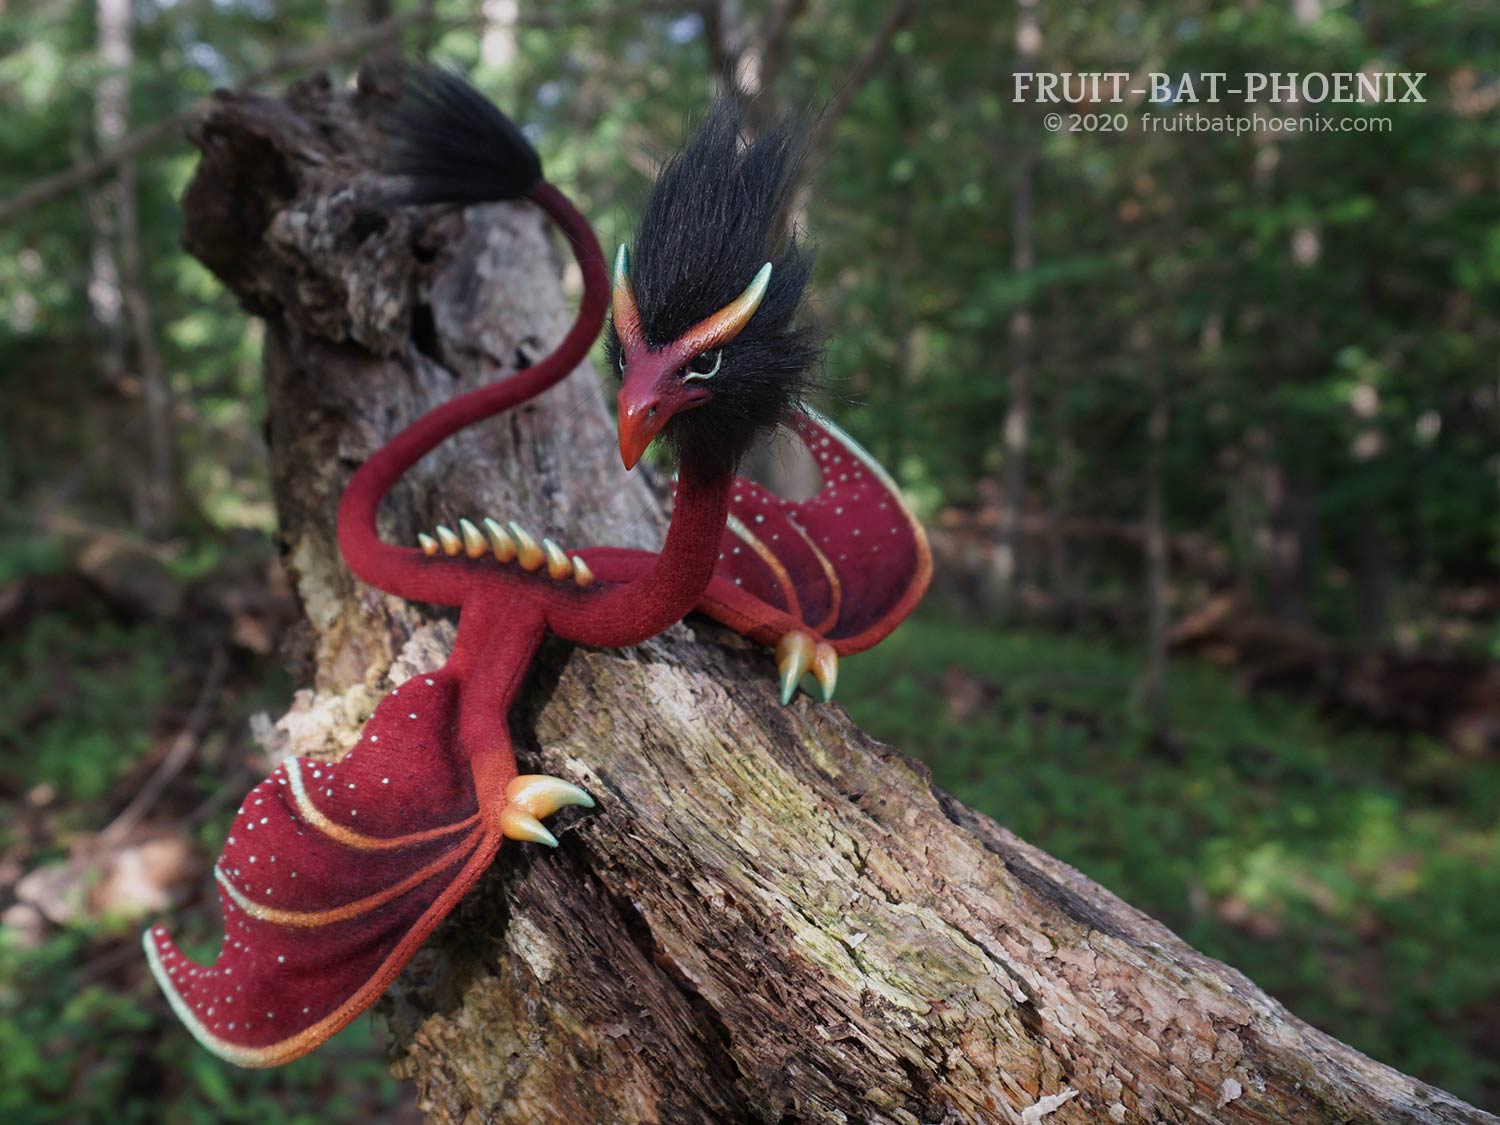 Red Seafoam Eagle Wyrm posable dragon art doll